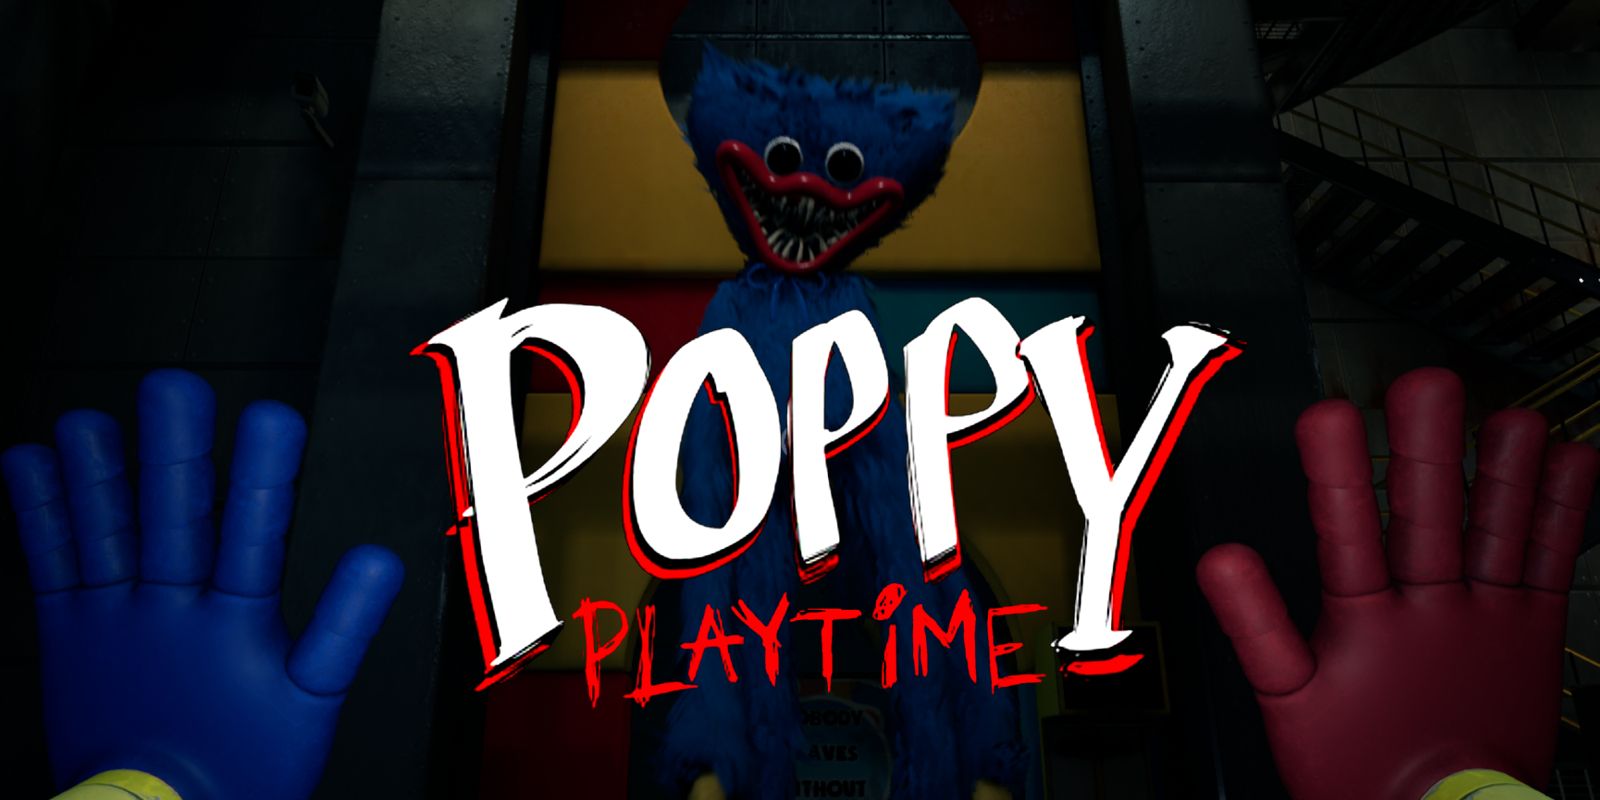 Online poppy playtime POPPY PLAYTIME